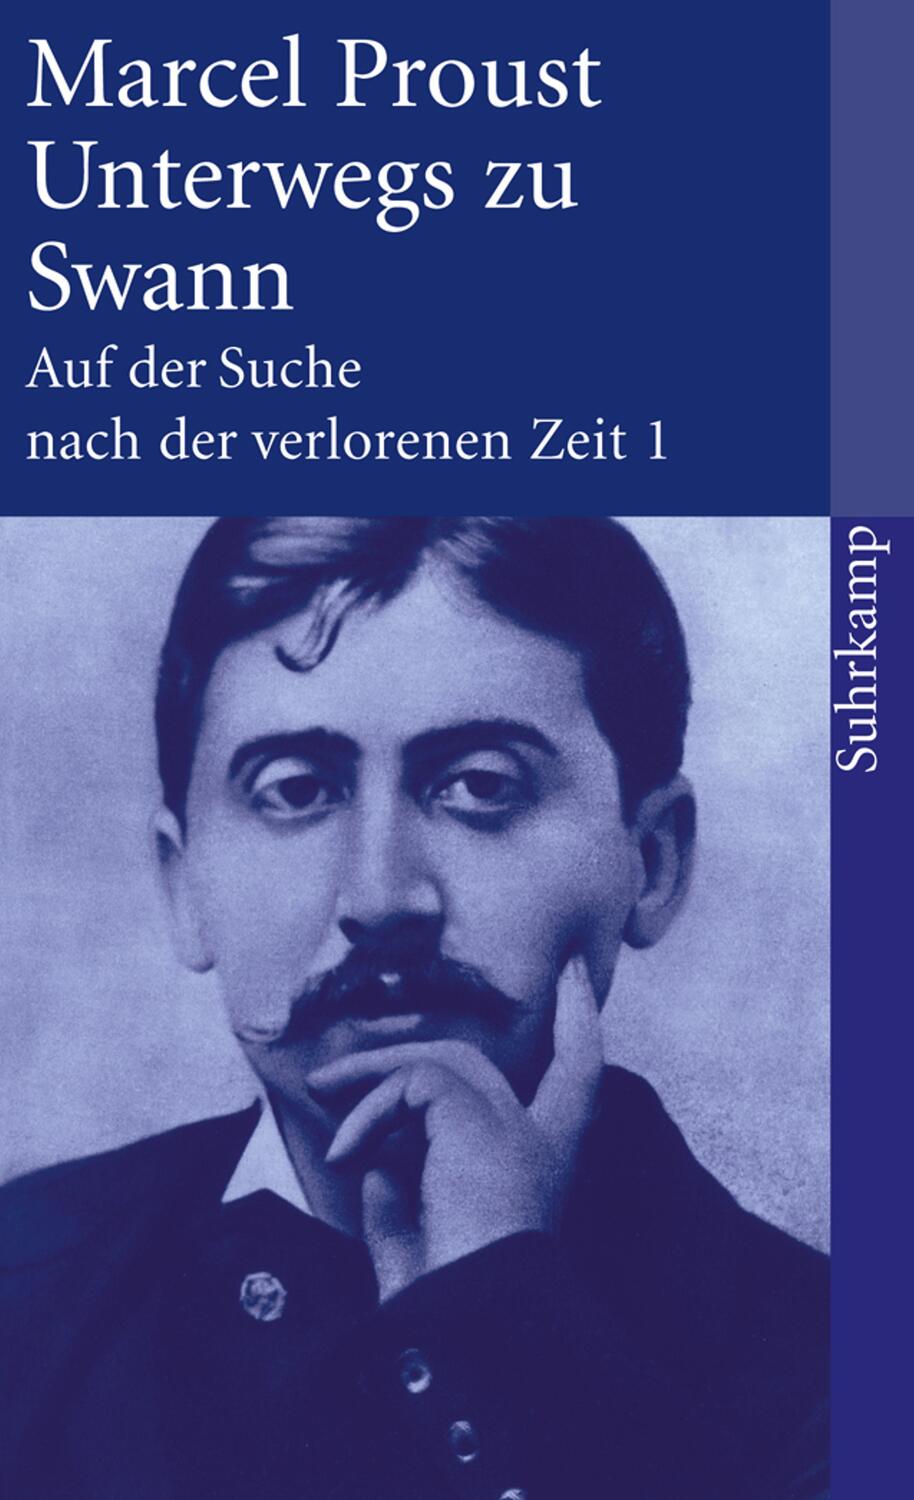 Auf der Suche nach der verlorenen Zeit 1. Unterwegs zu Swann - Proust, Marcel